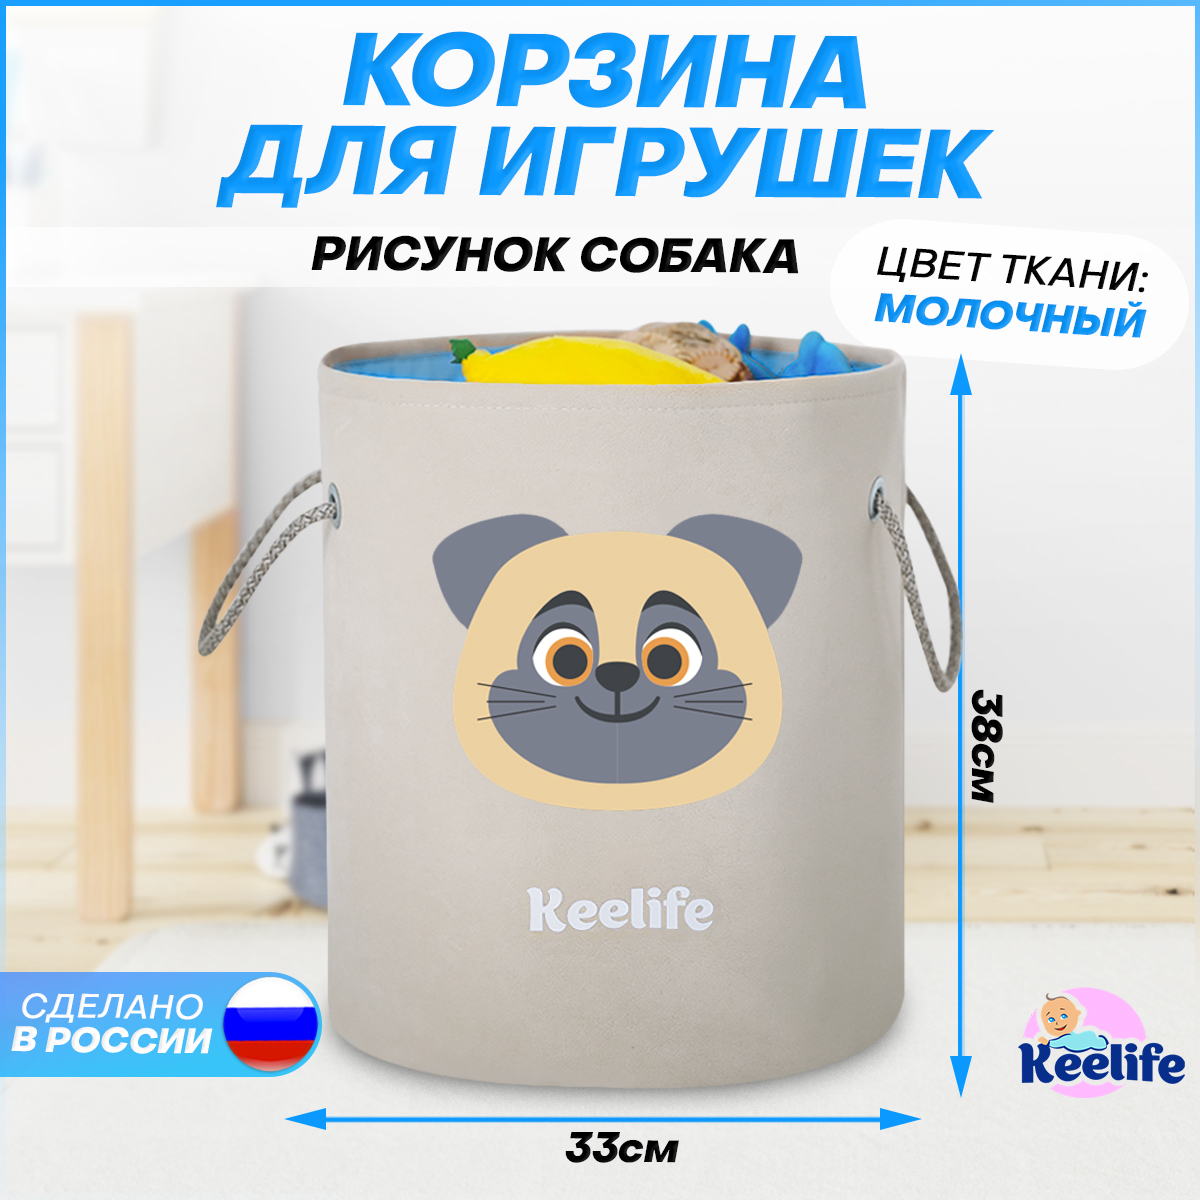 Корзина для игрушек Keelife органайзер для хранения Собака молочный-голубой 33х38см - фото 2